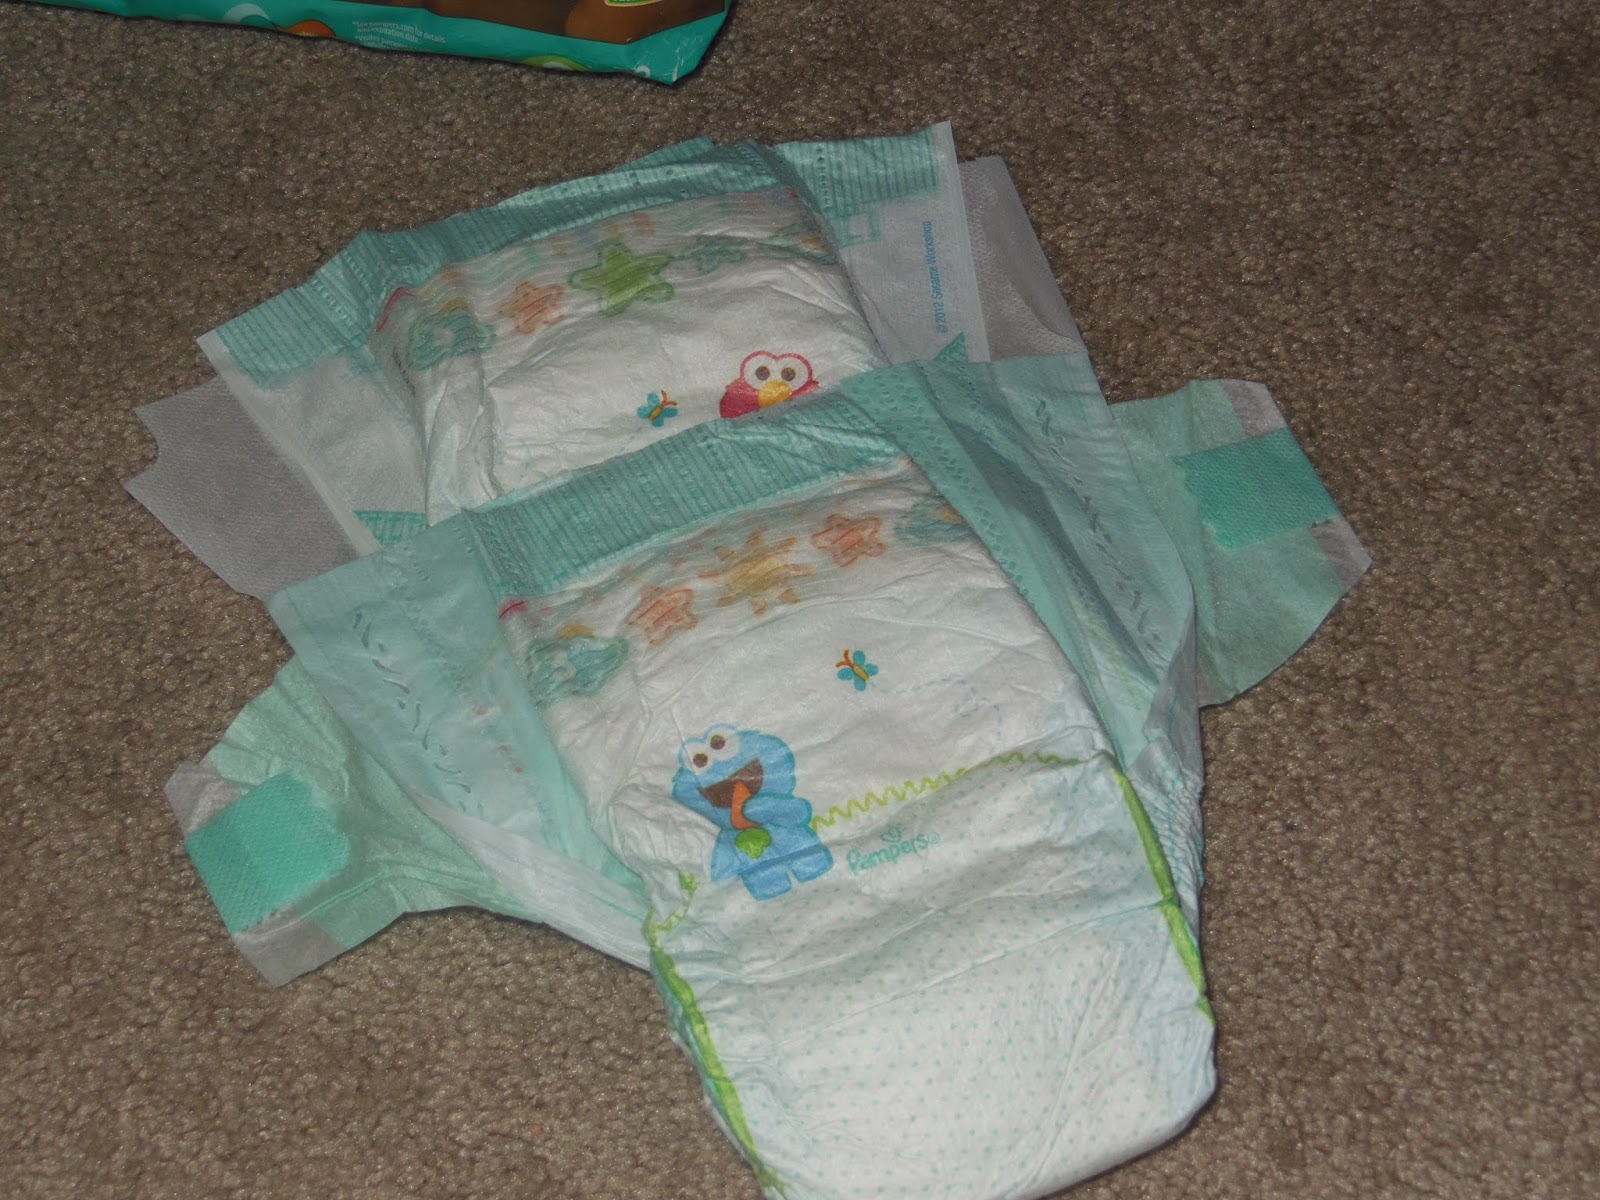 Sleeping kids in diapers, IMG_4977 @iMGSRC.RU